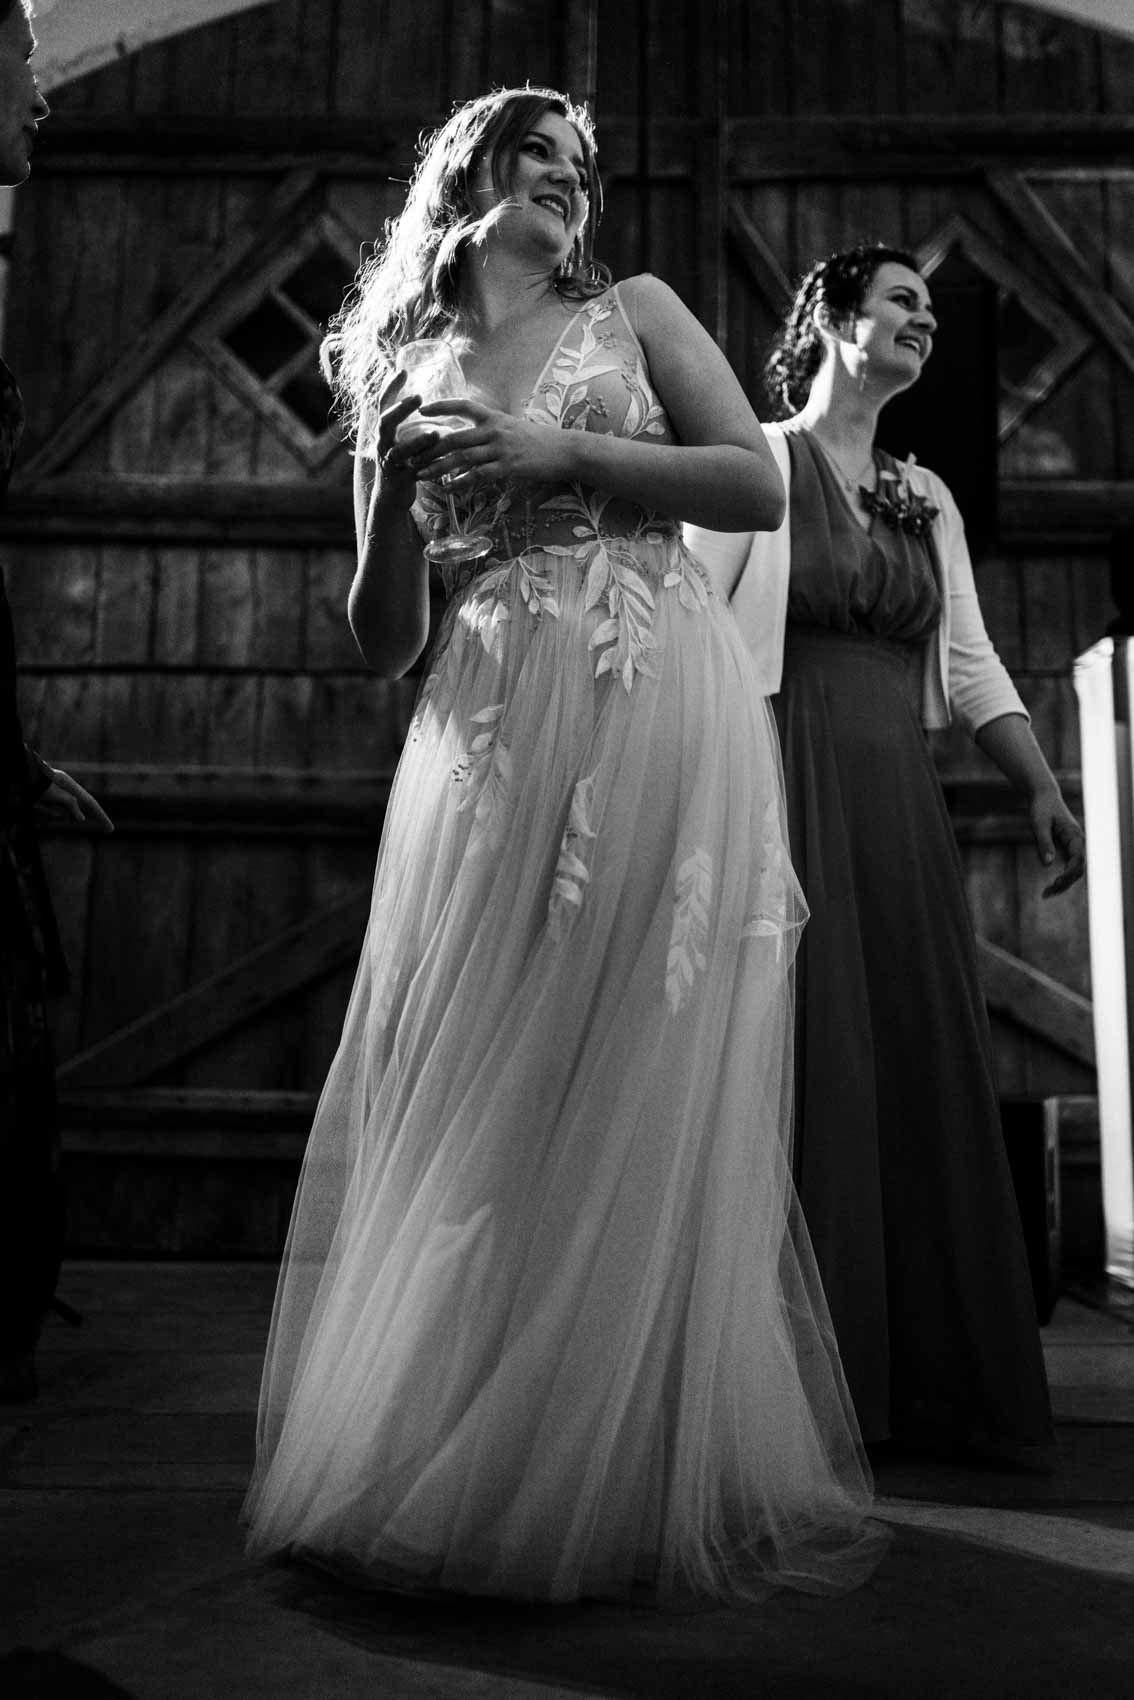 Tanzende Braut beim Hochzeitstanz im Saal der Hochzeitslocation Haus Runde in Billerbeck. 